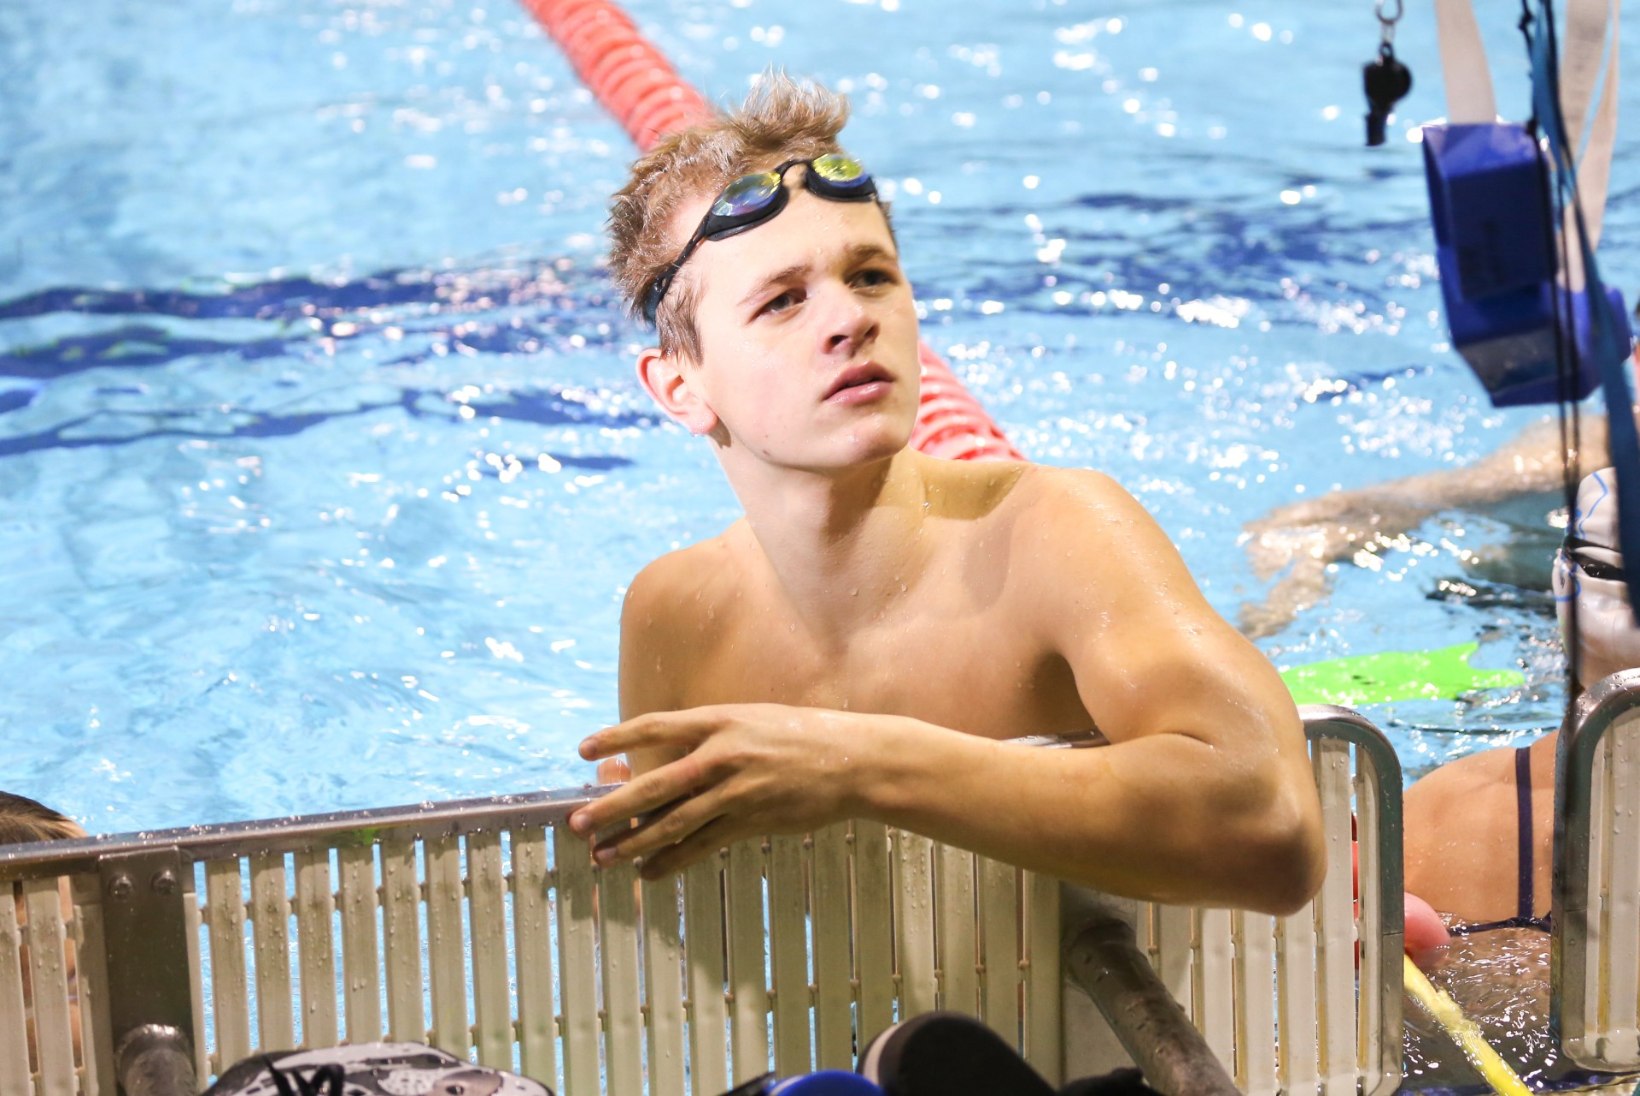 ERAKORDNE TALENT: 15-aastane ujuja püstitas järjekordse täiskasvanute rekordi!